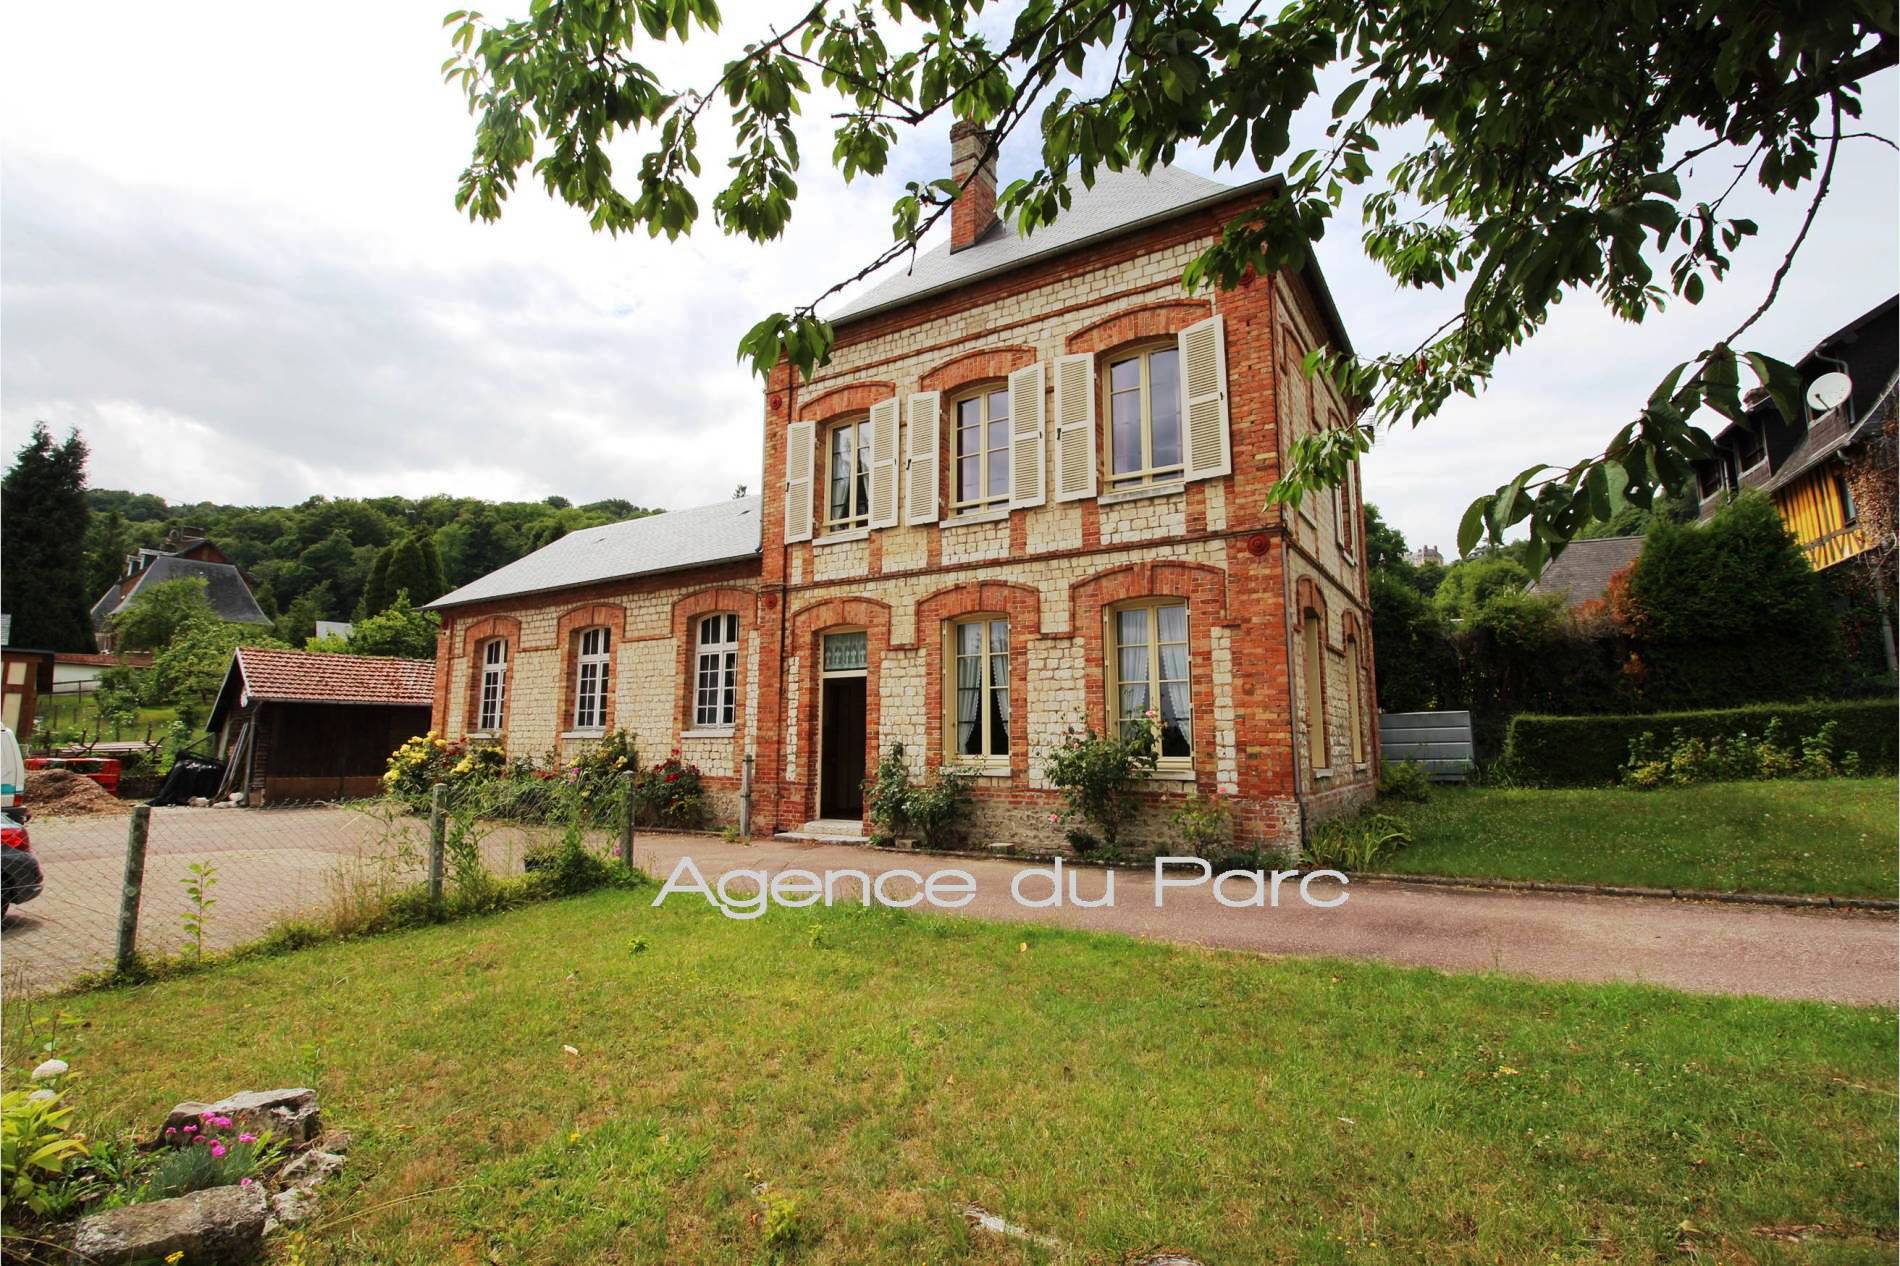 Maison ancienne à vendre Campagne de Caudebec en Caux, dans un charmant village de la Vallée de la Seine, en Normandie